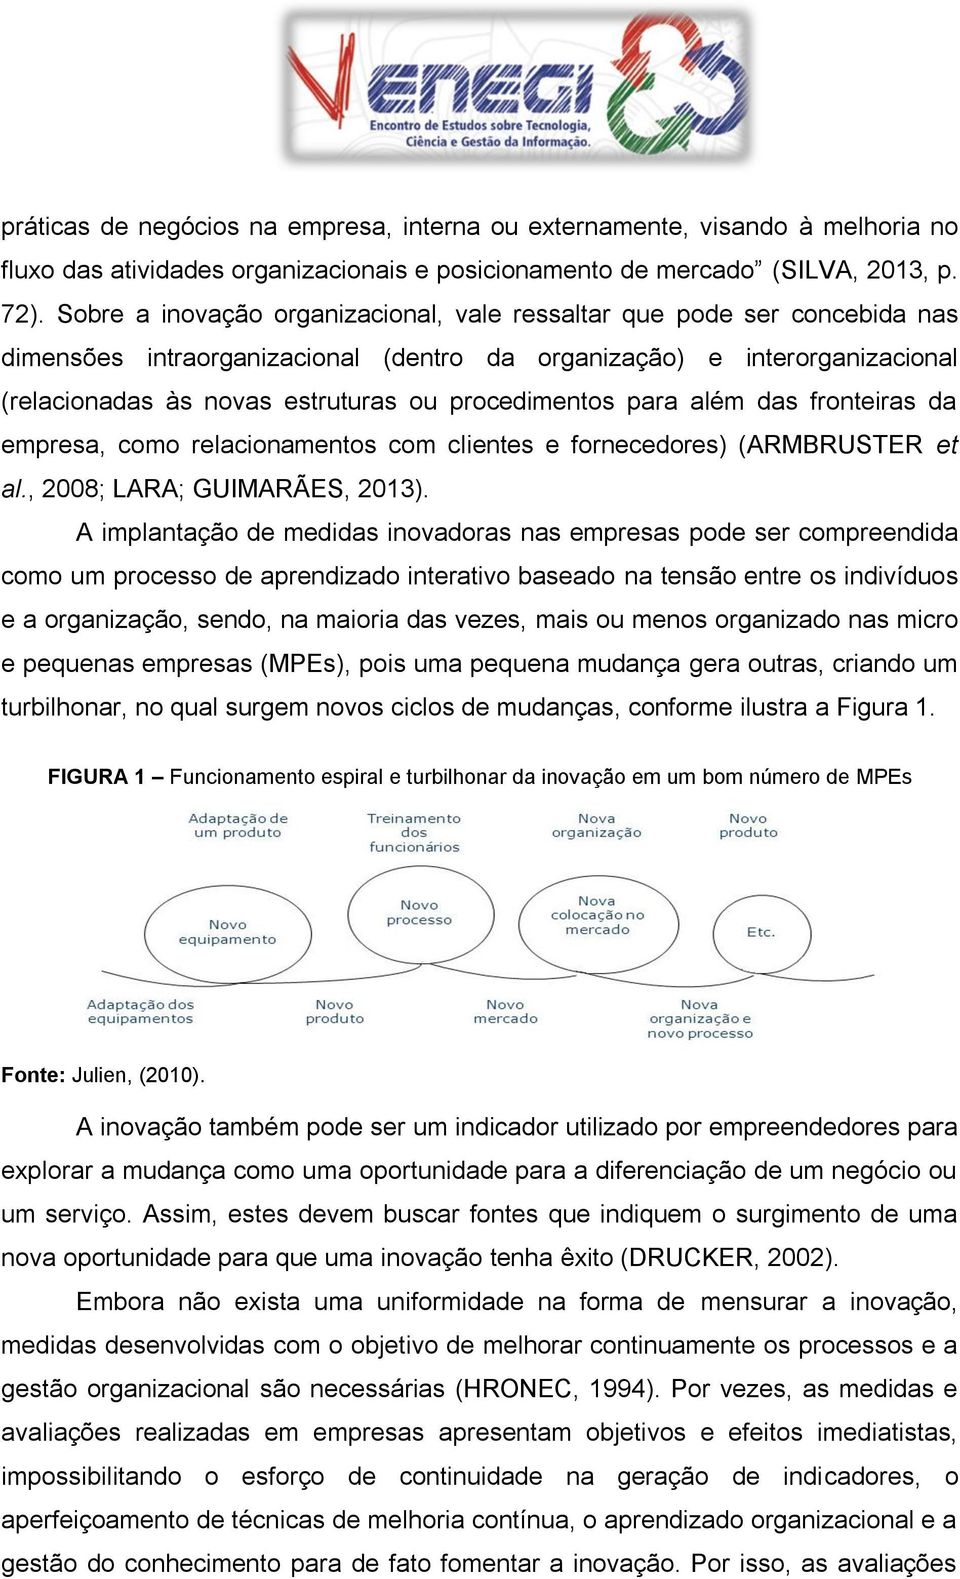 procedimentos para além das fronteiras da empresa, como relacionamentos com clientes e fornecedores) (ARMBRUSTER et al., 2008; LARA; GUIMARÃES, 2013).